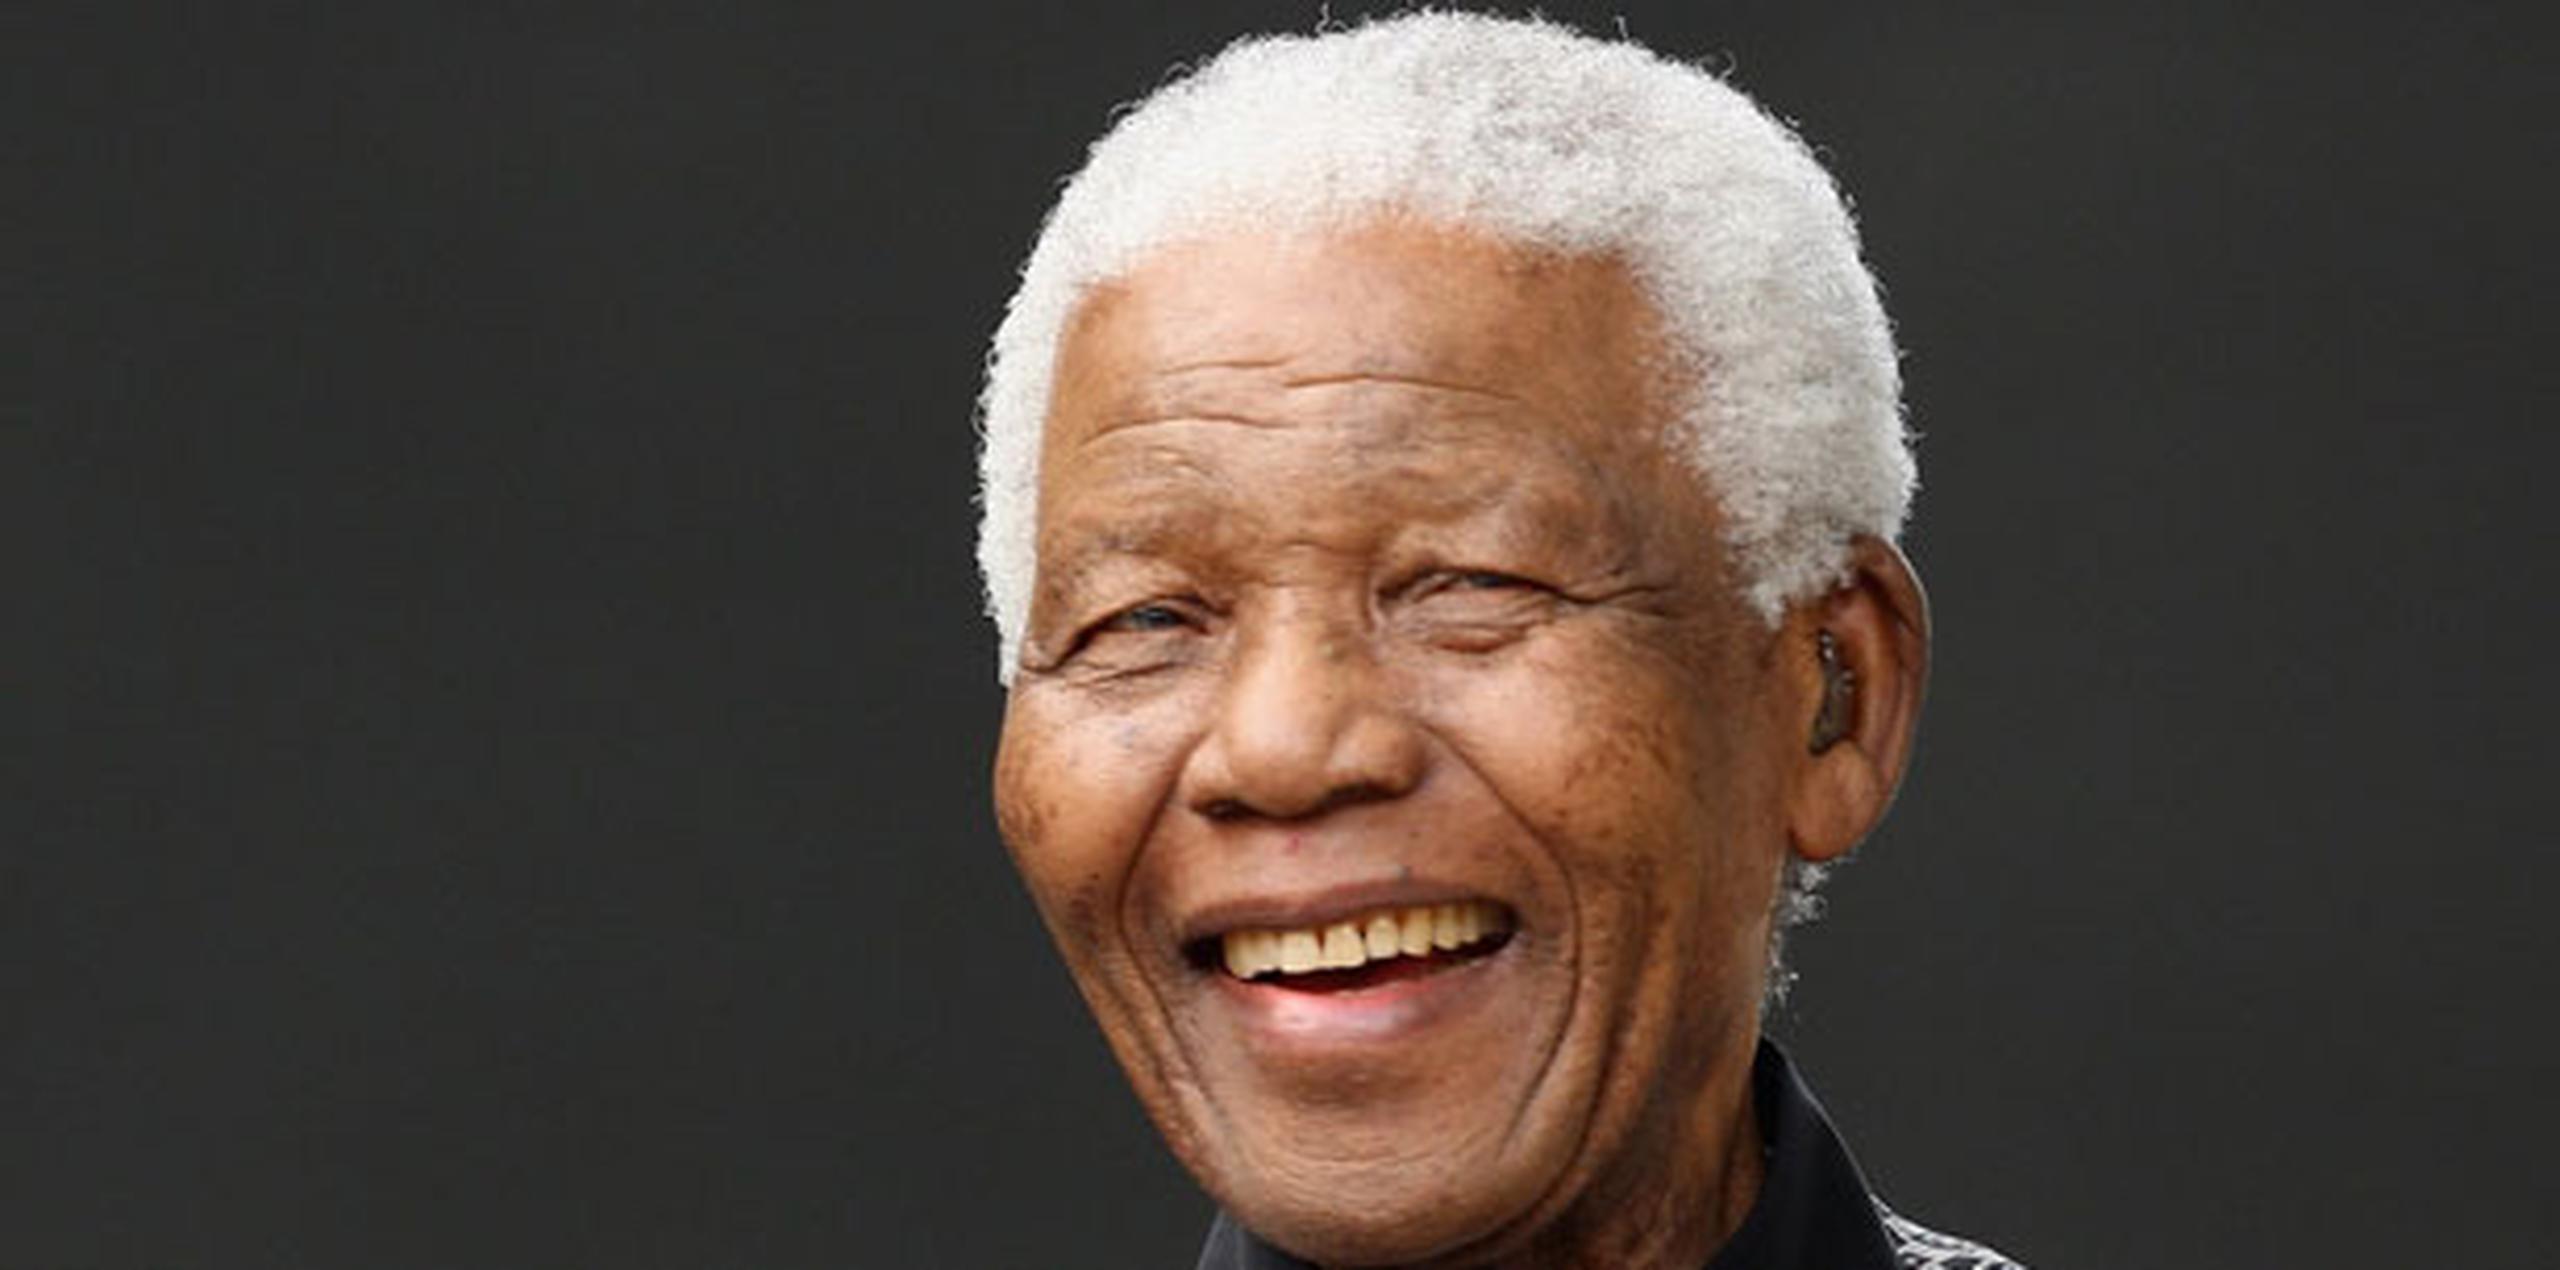 Elegido como presidente en 1994, Mandela afianzó desde la presidencia una improbable paz racial, después de más de cuatro décadas de dominación racista de la minoría blanca de Sudáfrica. (Archivo)